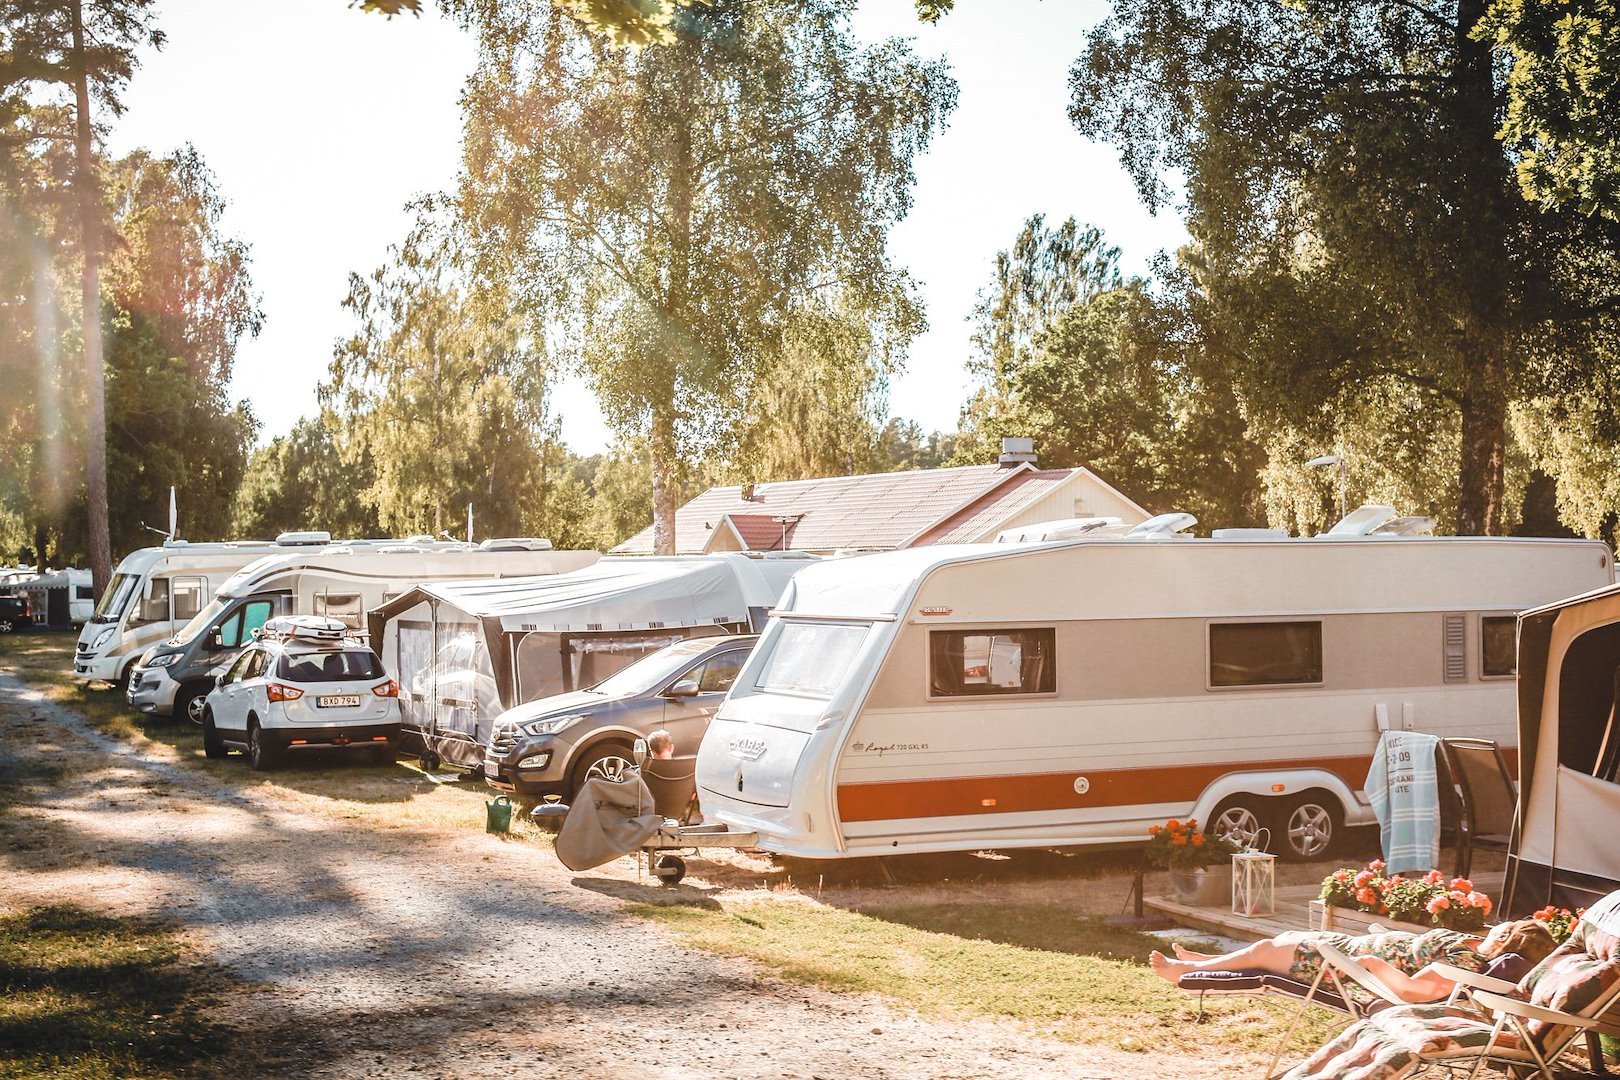 Emplacement de camping caravane/camping-car/tente avec électricité 80-100 qm